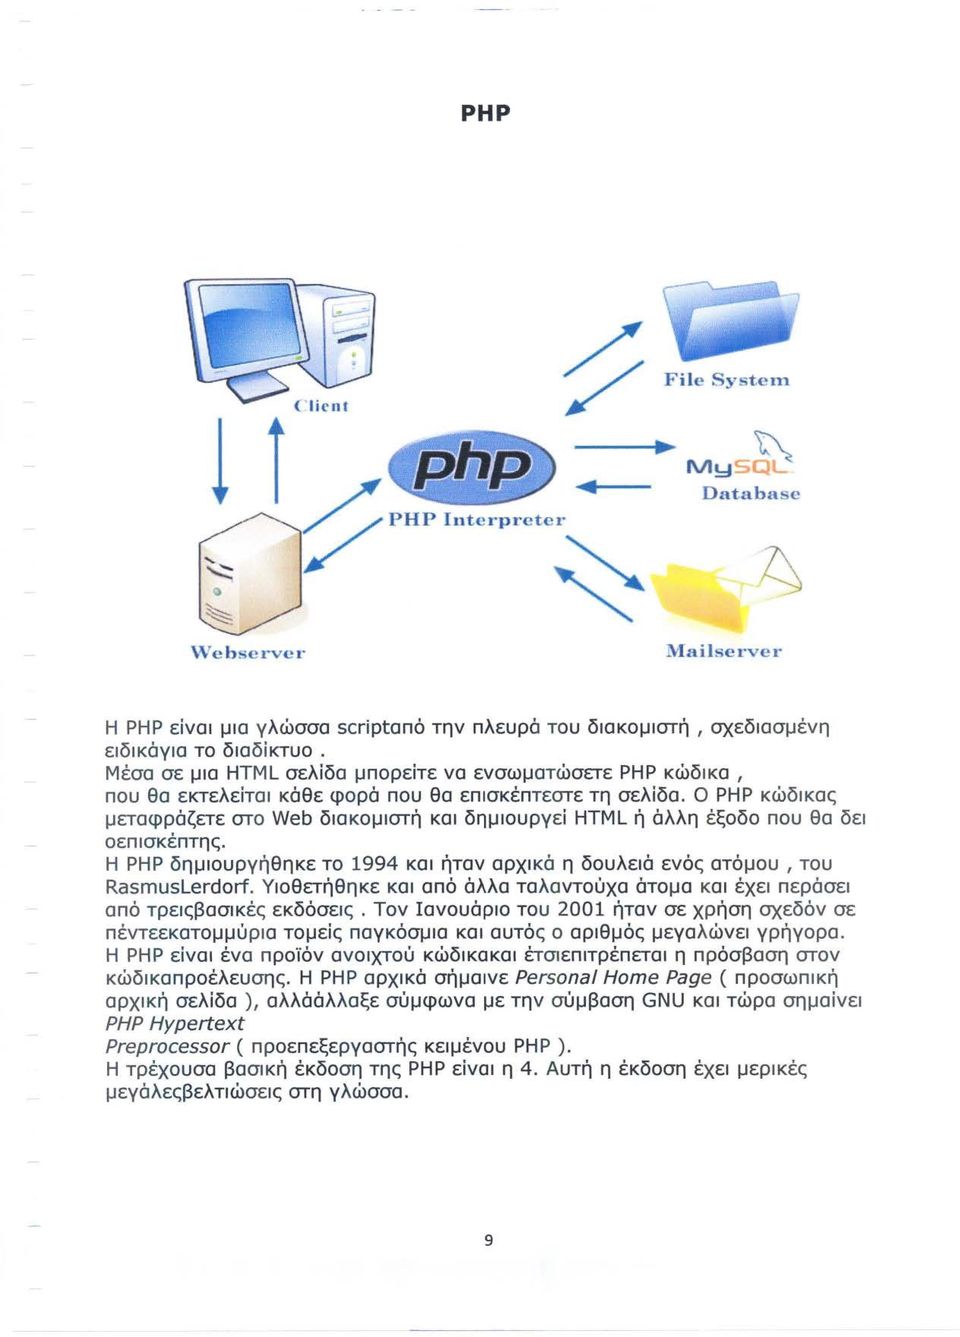 Ο ΡΗΡ κώδικας μεταφράζετε στο Web διακομιστή και δημιουργεί HTML ή άλλη έξοδο που θα δει οεπ ισκέπτης. Η ΡΗΡ δημιουργήθηκε το 1994 και ήταν αρχικά η δουλειά ενός ατόμου, του RasmusLerdorf.